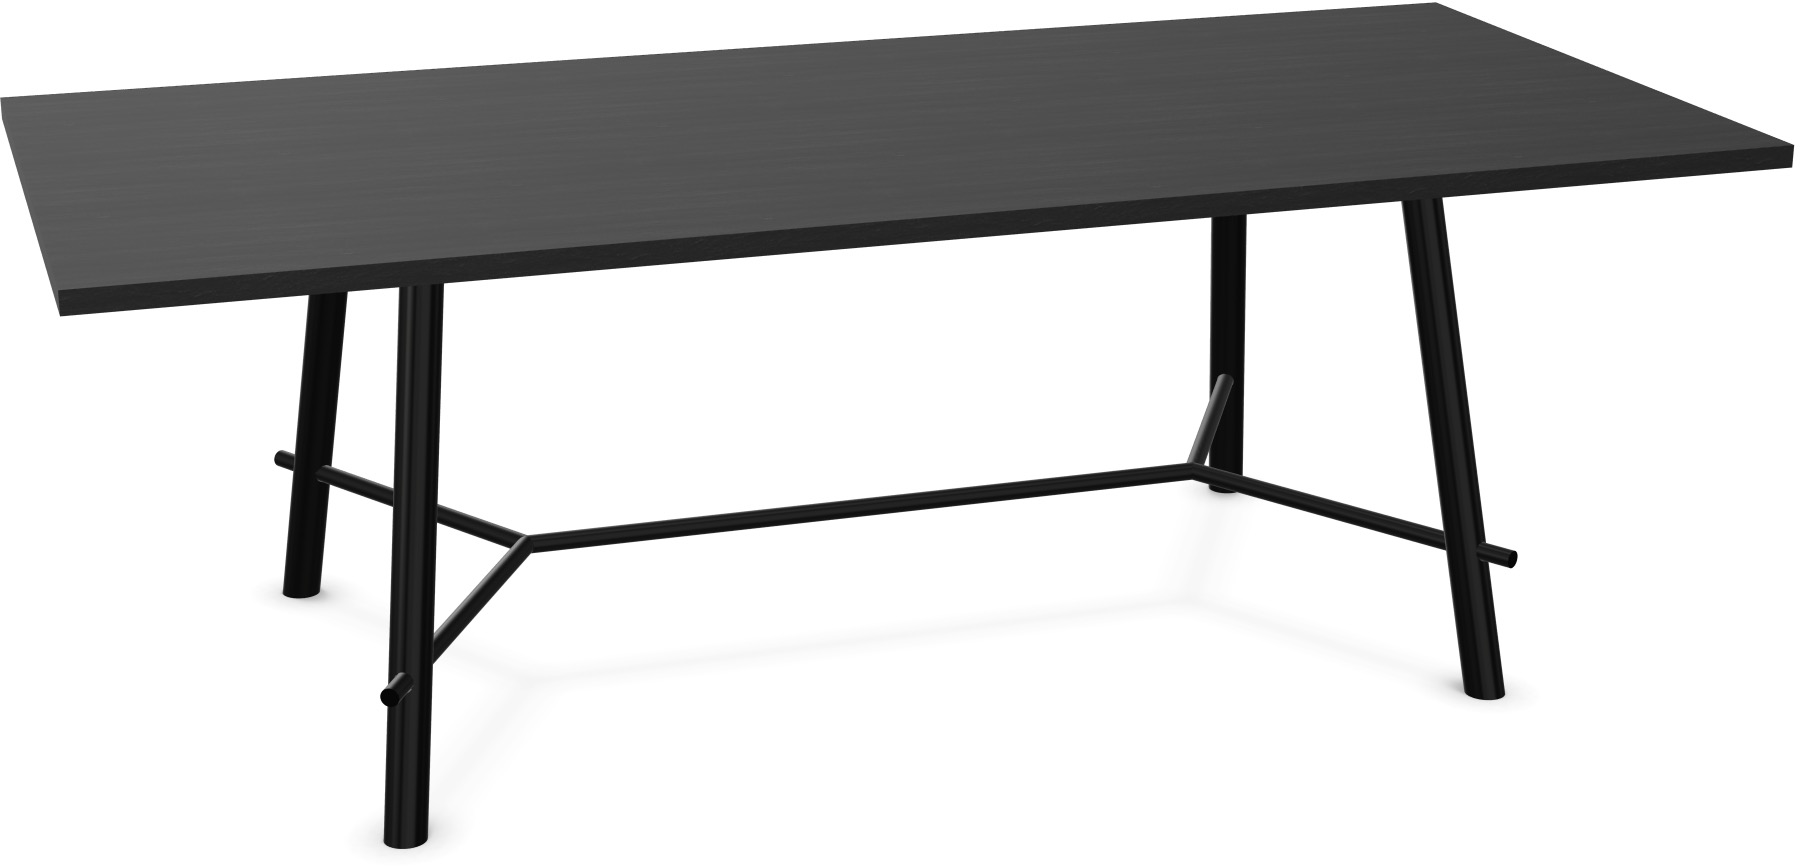 Record Living Maxi Tisch in Eiche schwarz / Schwarz präsentiert im Onlineshop von KAQTU Design AG. Esstisch ist von Infiniti Design